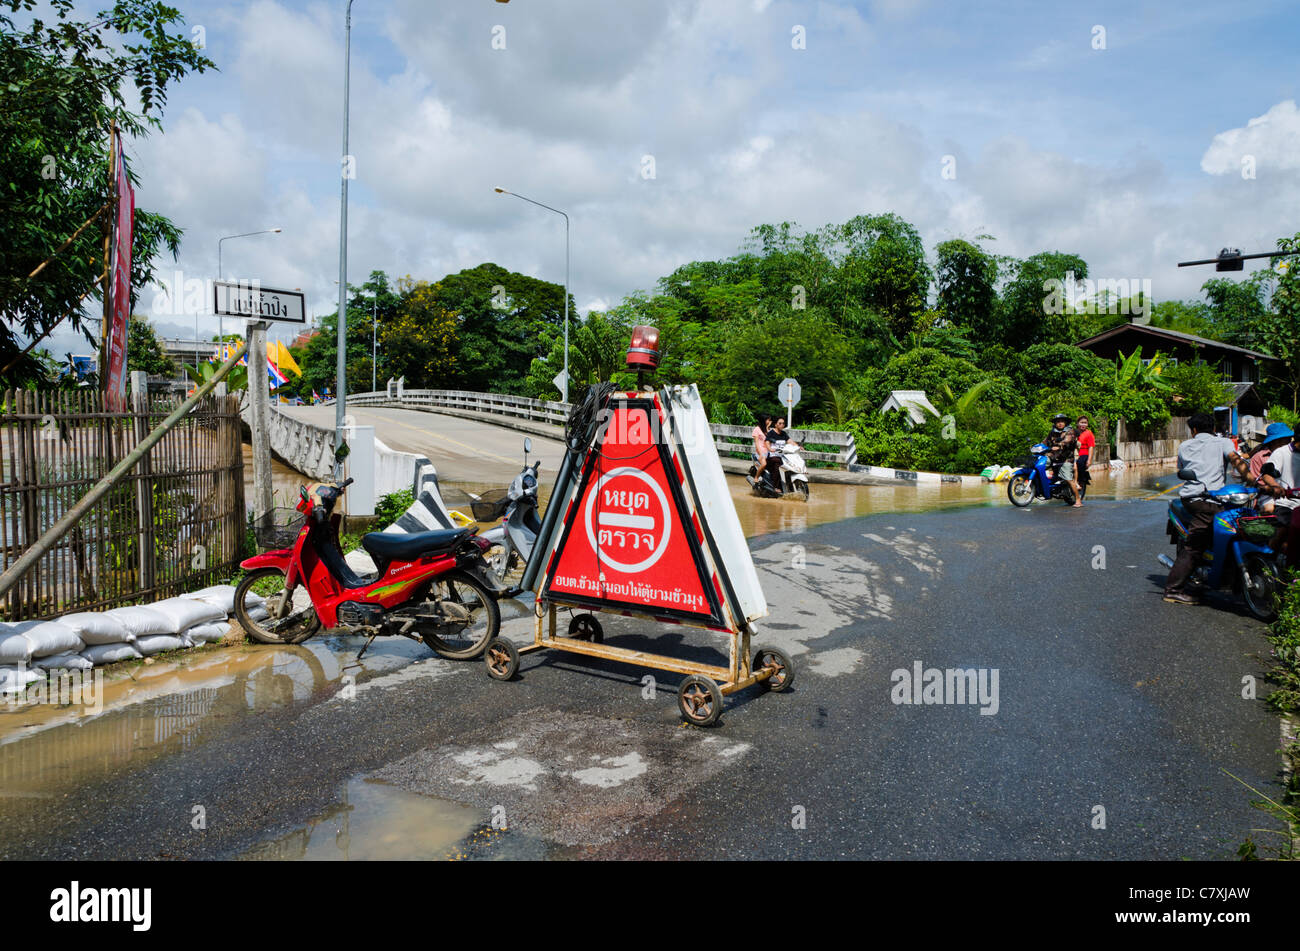 Grande triangolare rosso cartello di avviso in lingua Thai sulla strada a ponte inondato intersezione dal fiume Ping nel nord della Thailandia Foto Stock